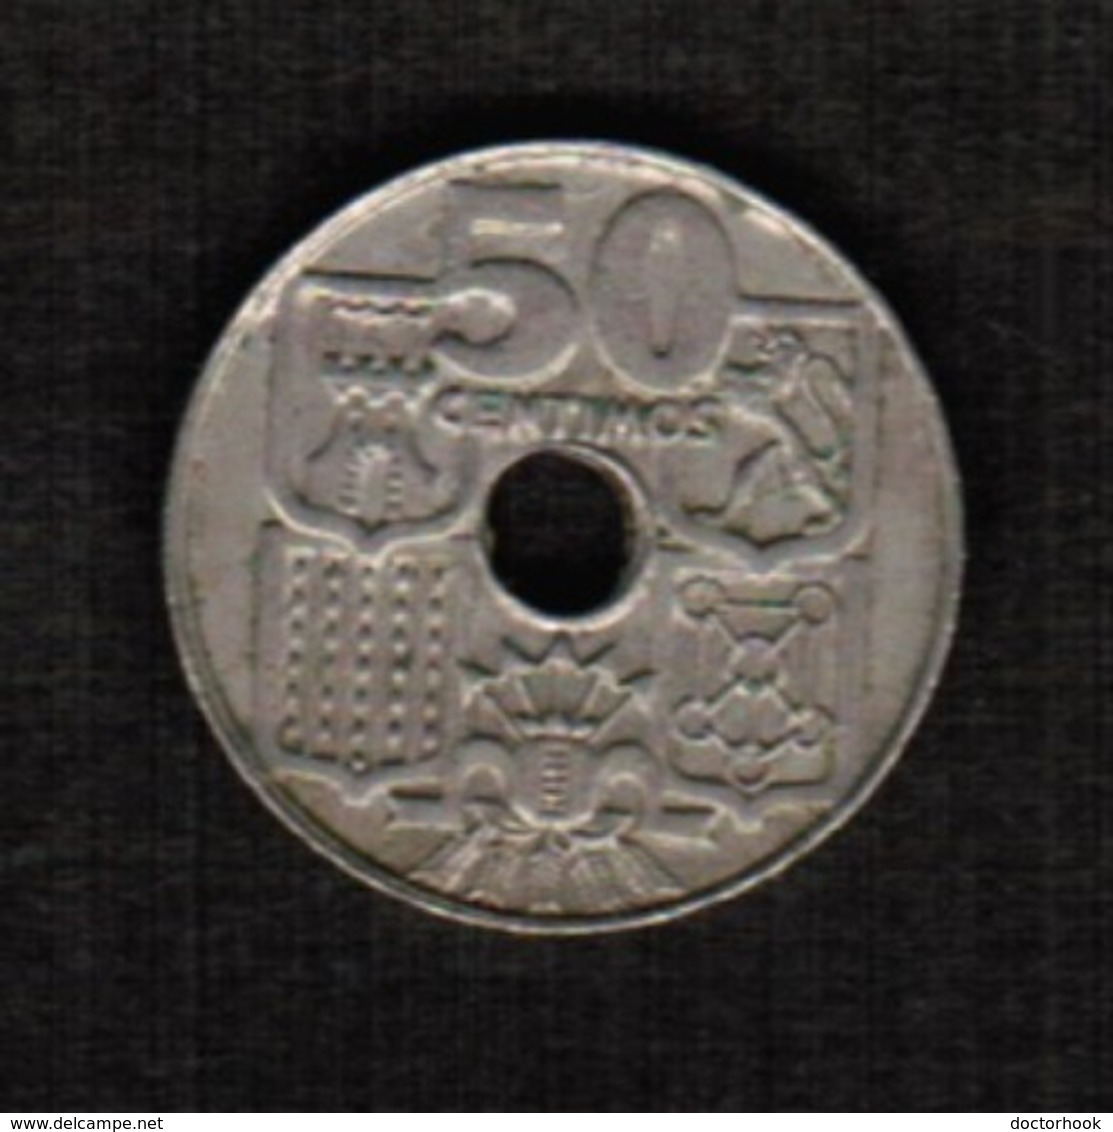 SPAIN  50 CENTIMOS 1963 (63) (KM # 777) #5297 - 50 Céntimos